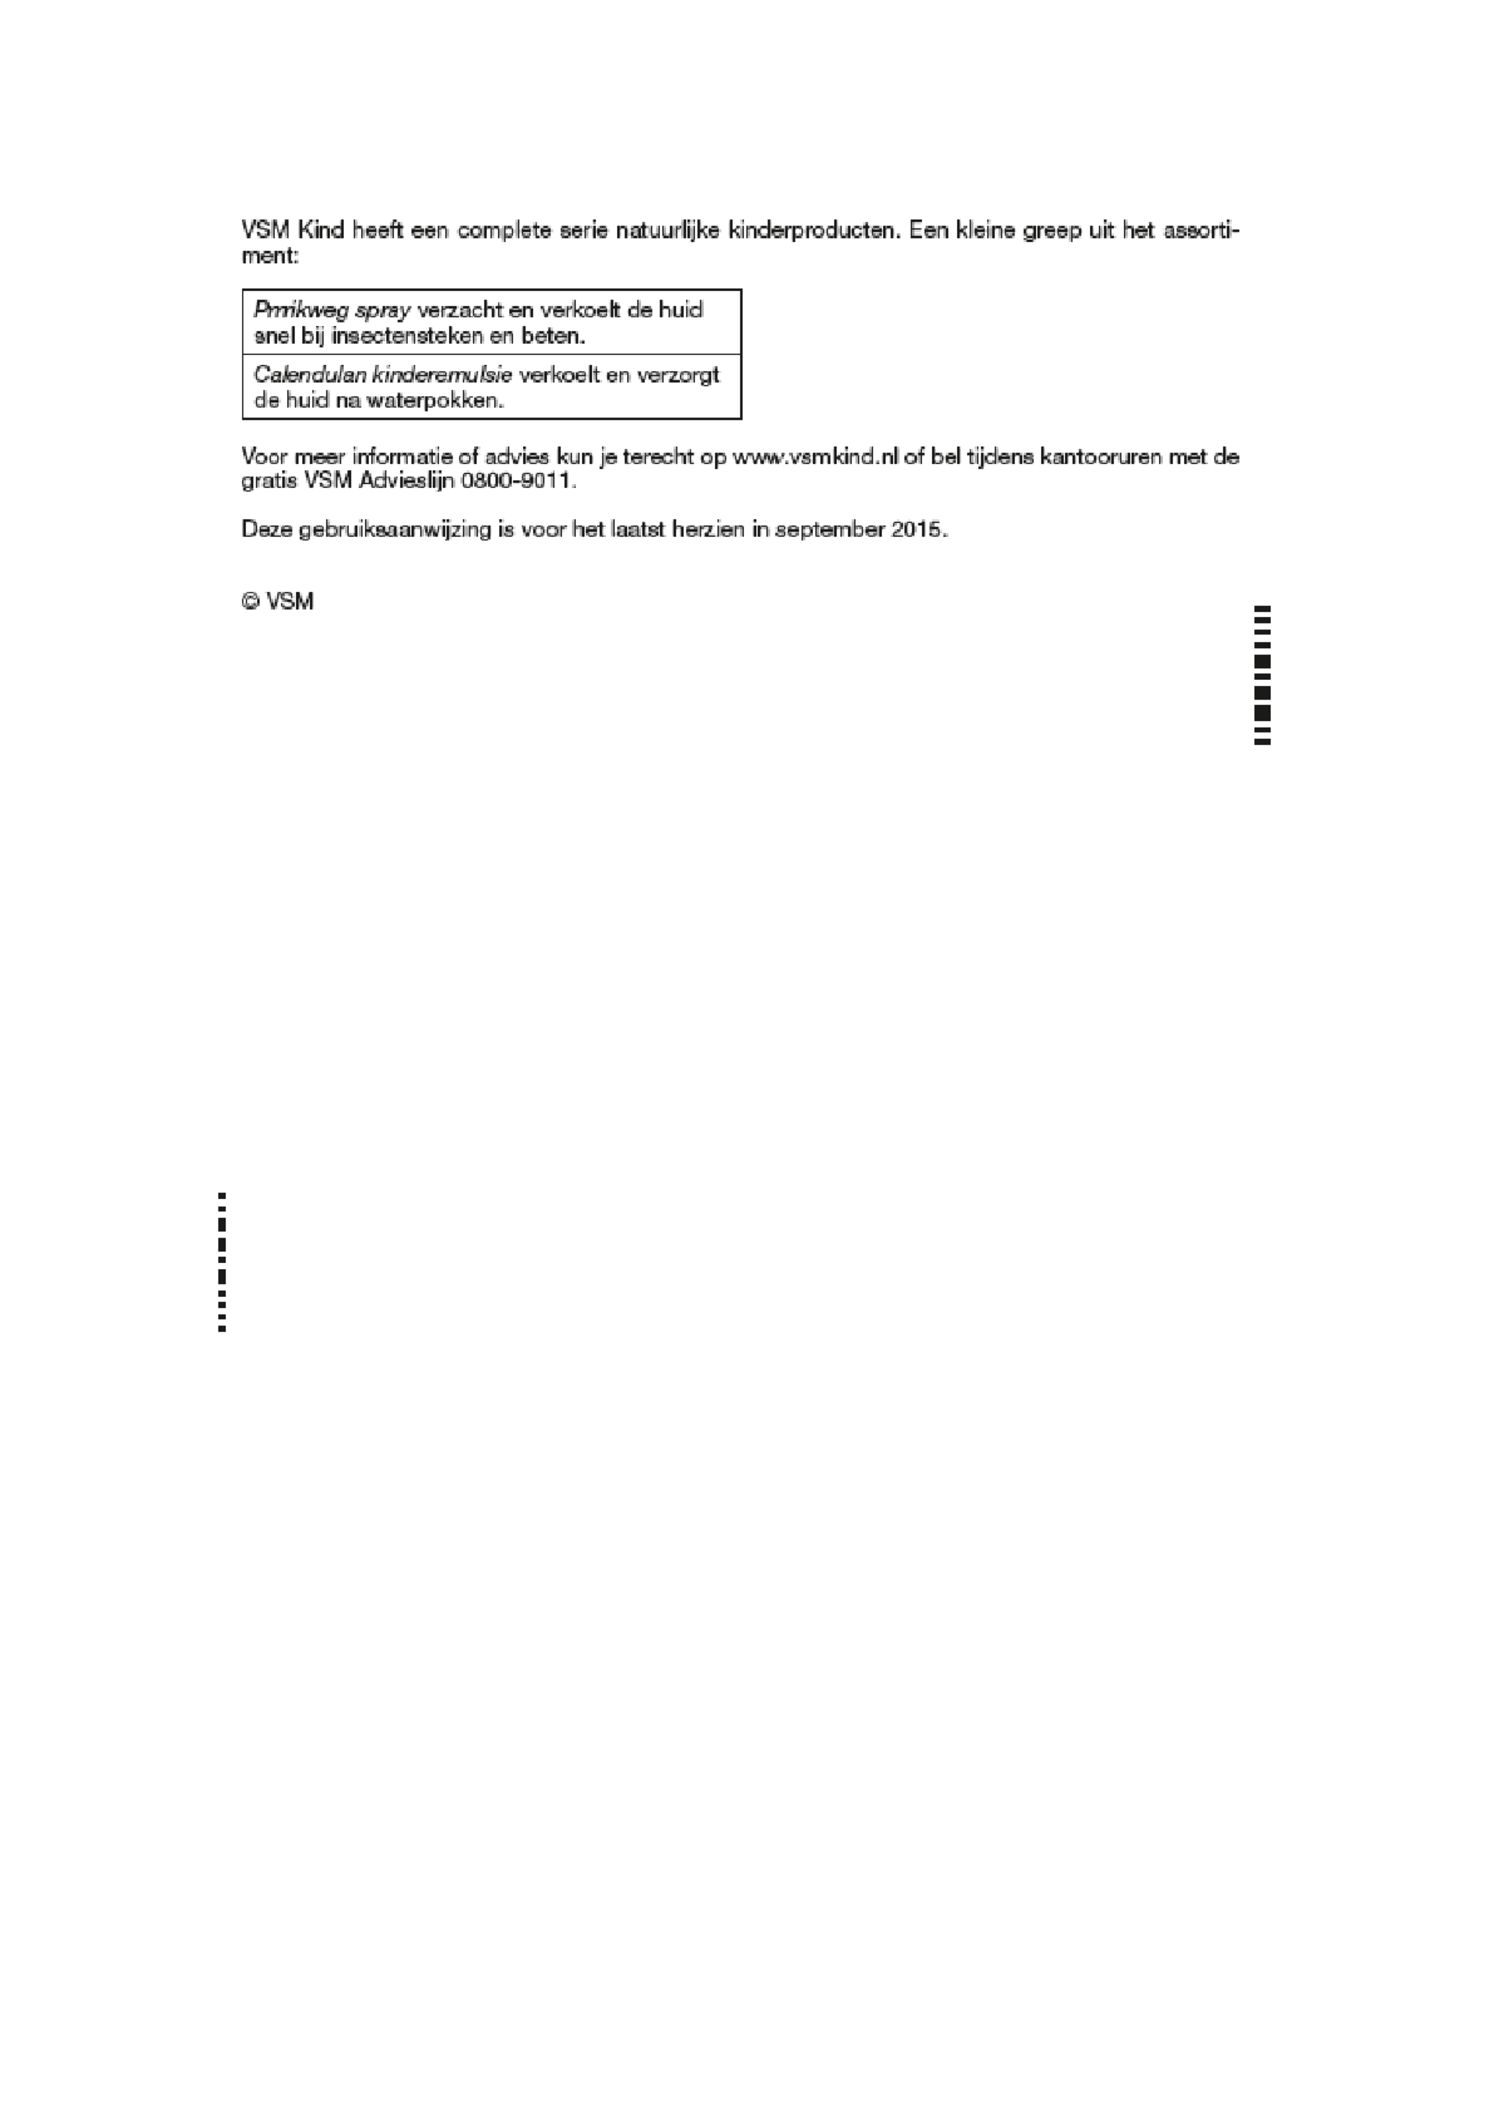 Arnikind Vallen en Stoten Gel 0-6 jaar afbeelding van document #2, gebruiksaanwijzing